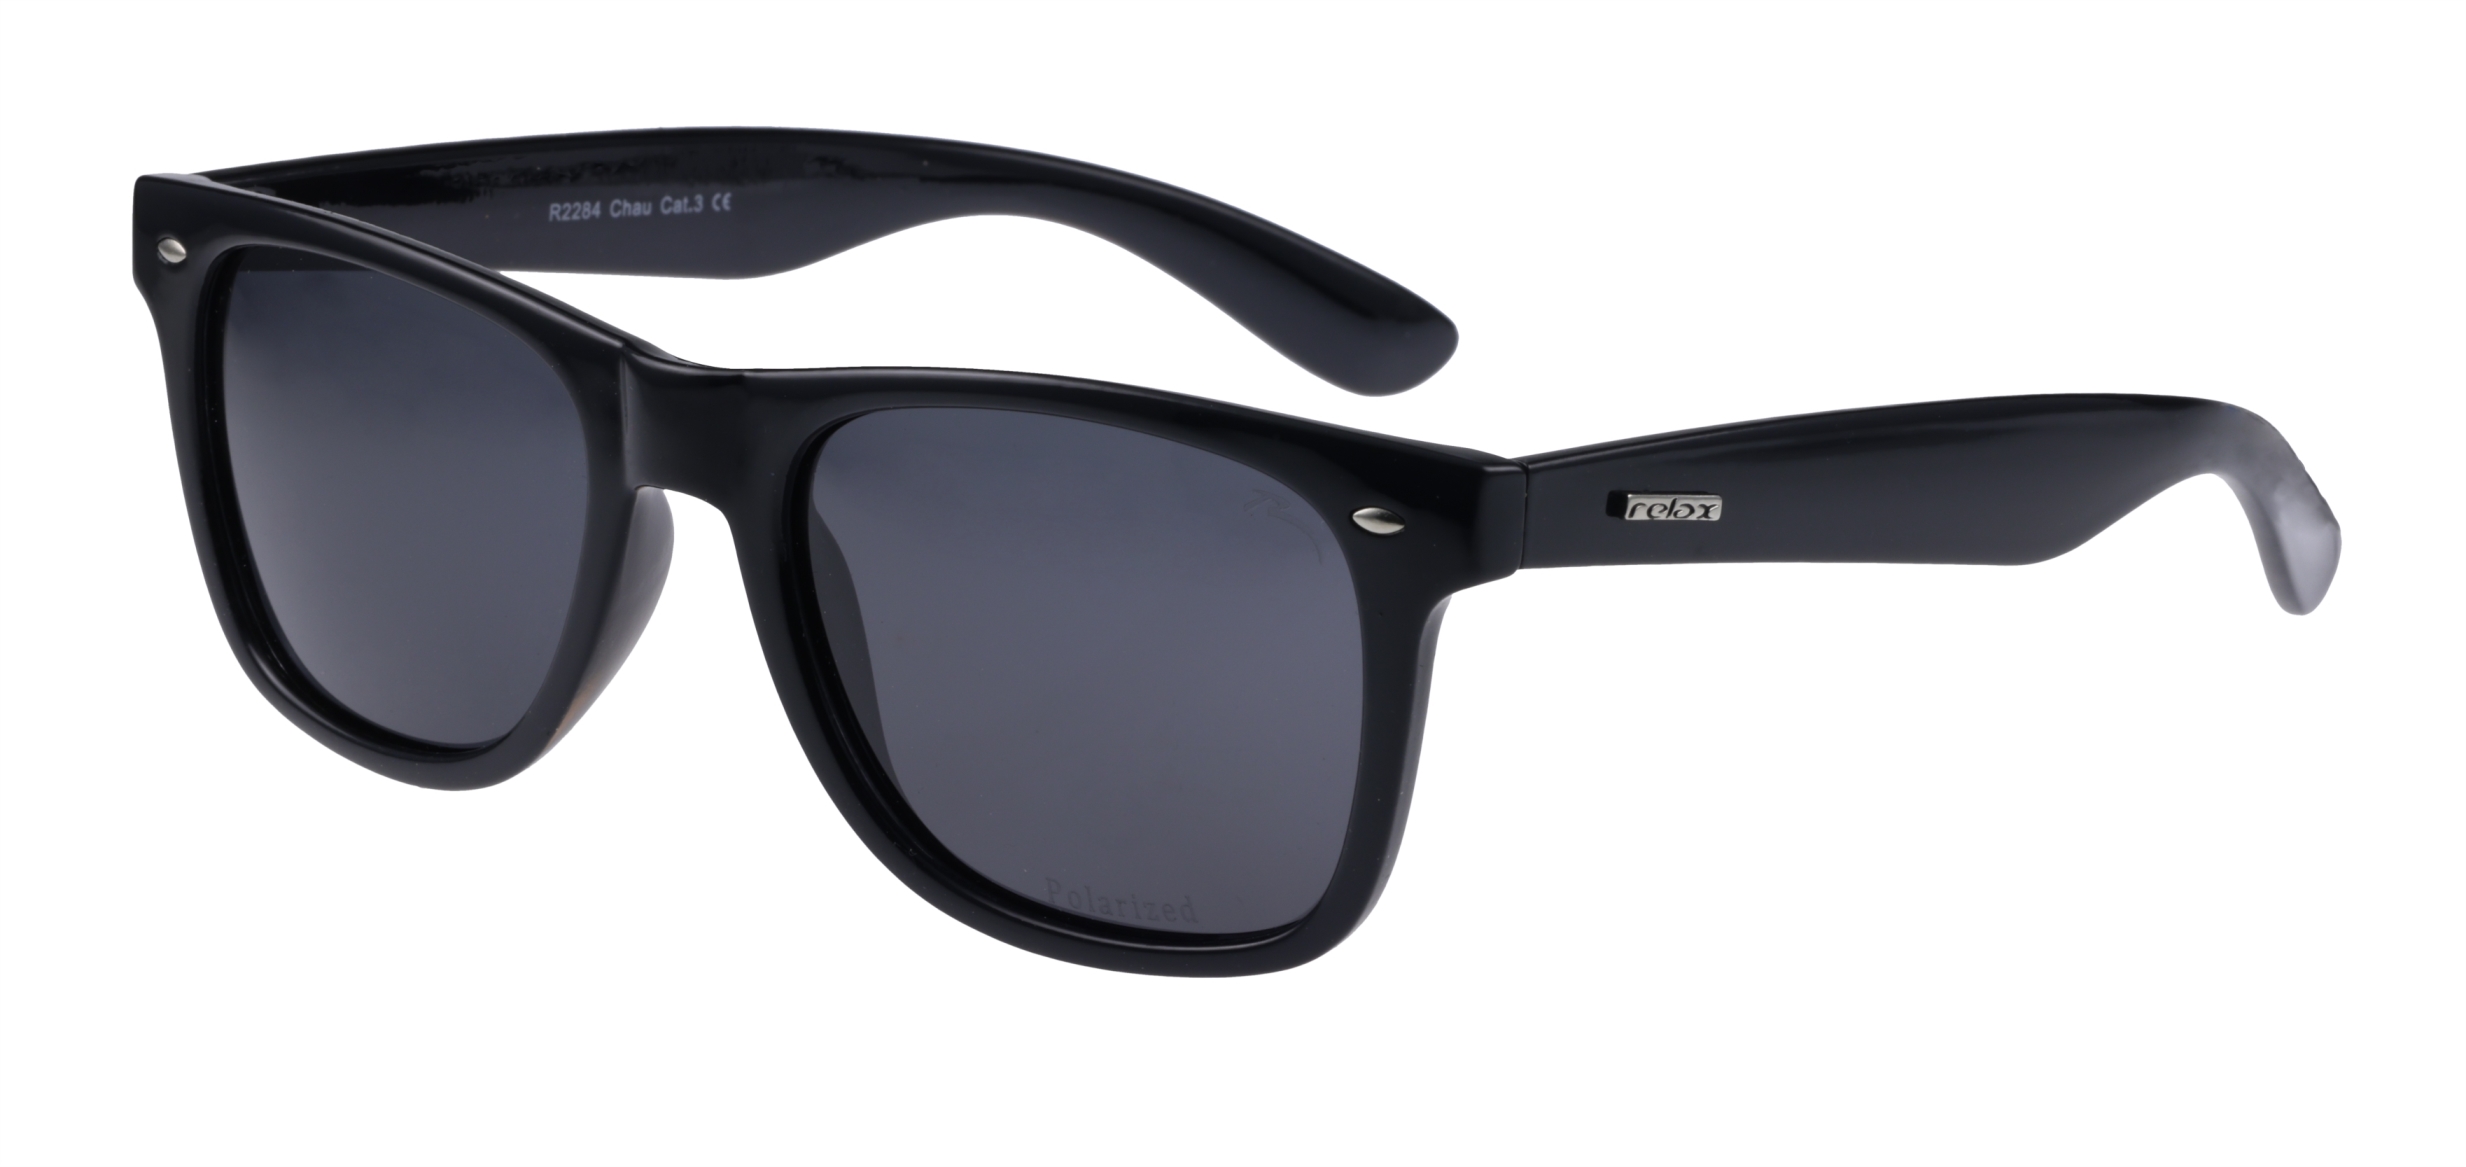 Polarizační sluneční brýle Relax Chau R2284 - standard